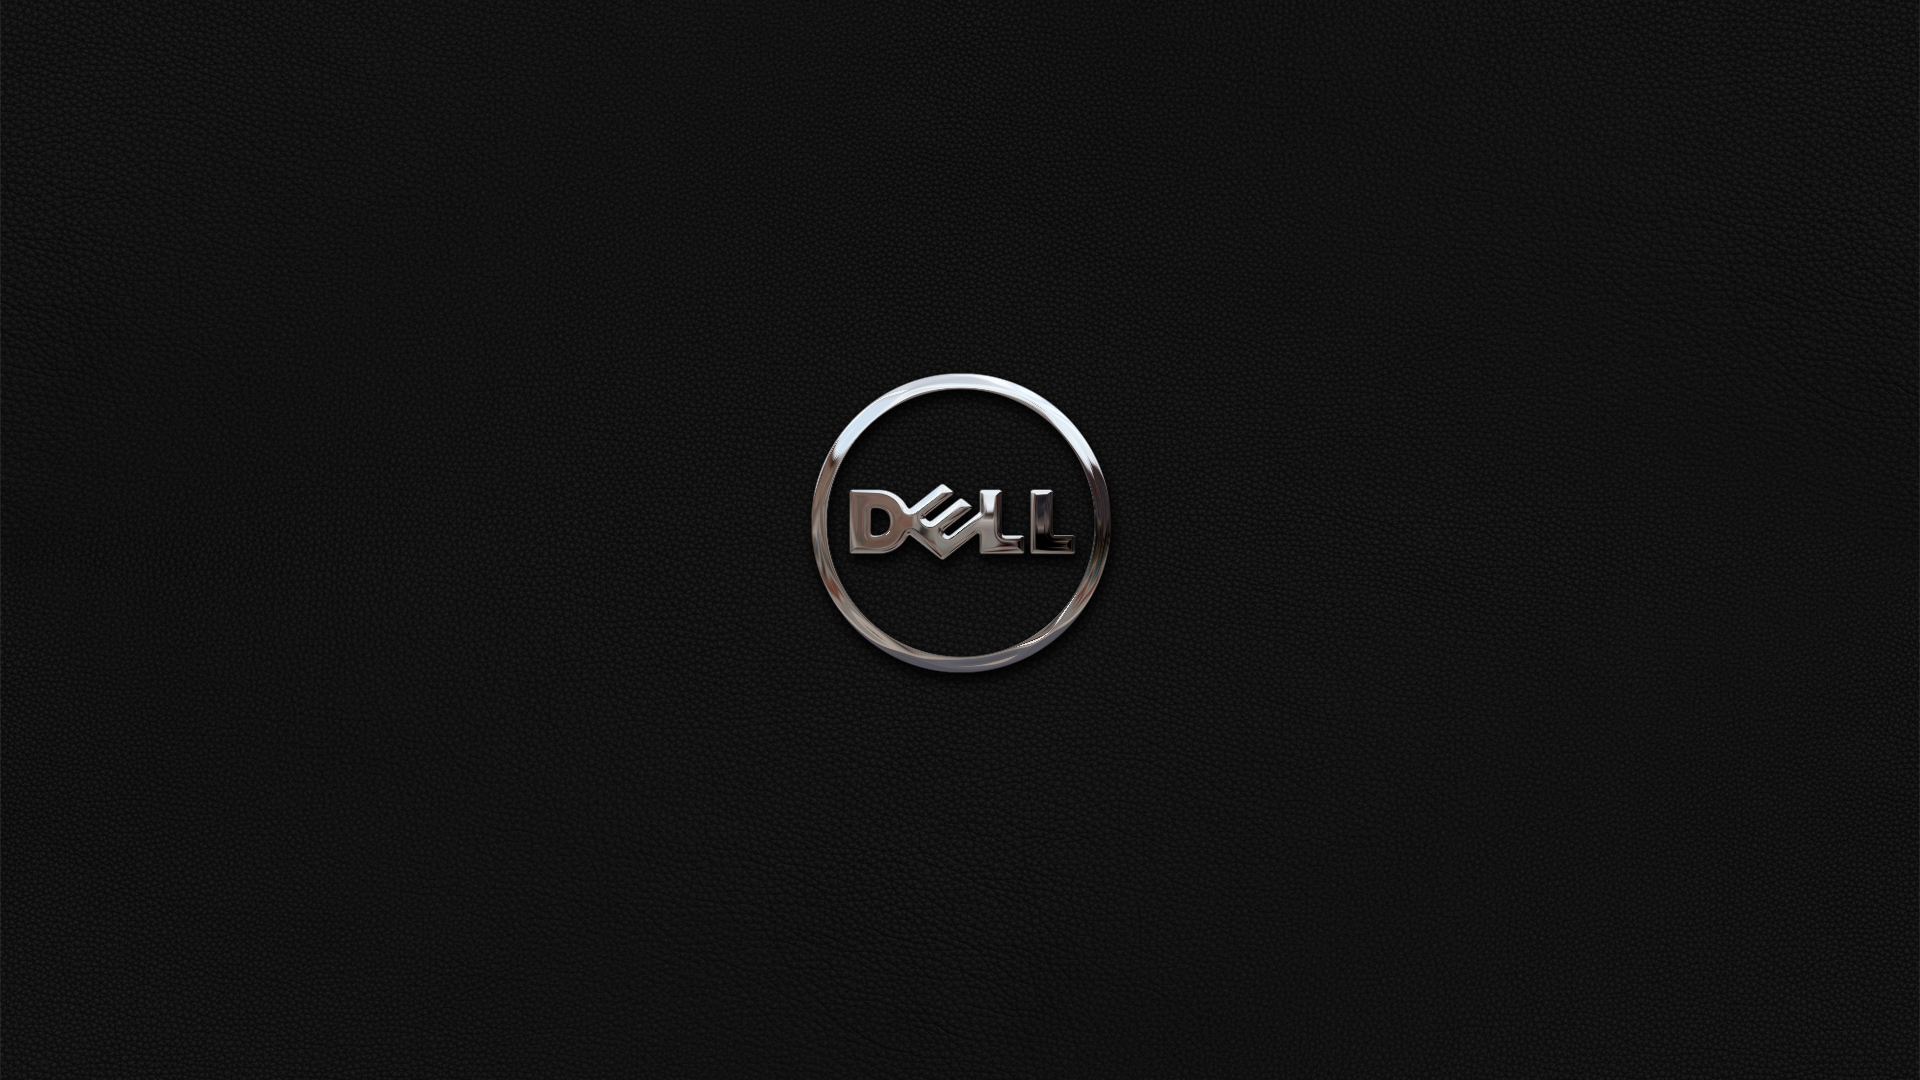 General 1920x1080 Dell dark background simple background logo minimalism brand